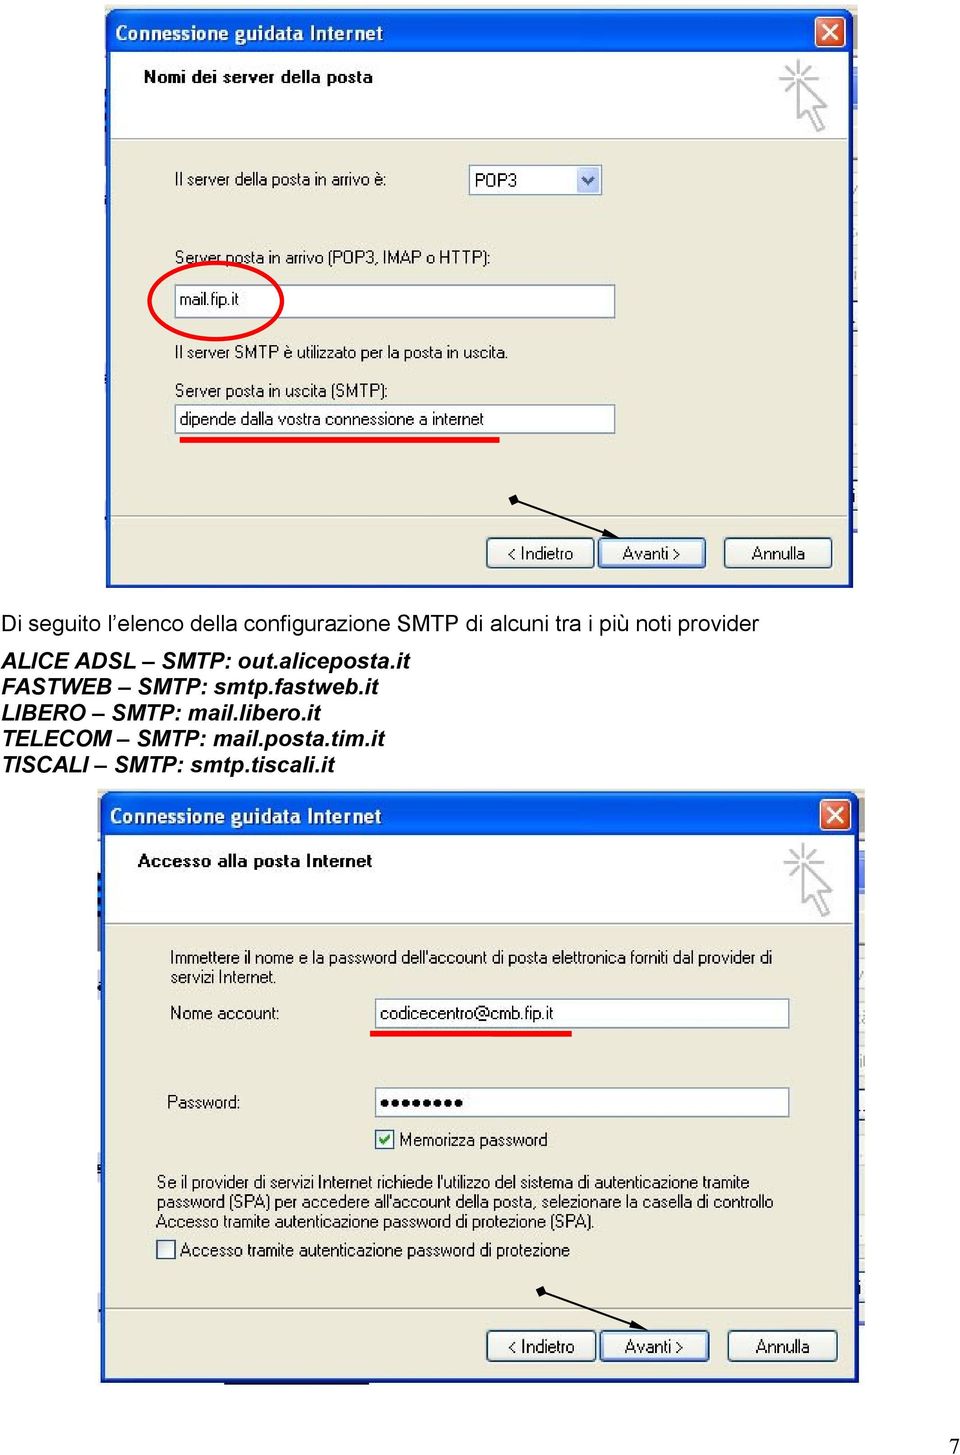 it FASTWEB SMTP: smtp.fastweb.it LIBERO SMTP: mail.libero.